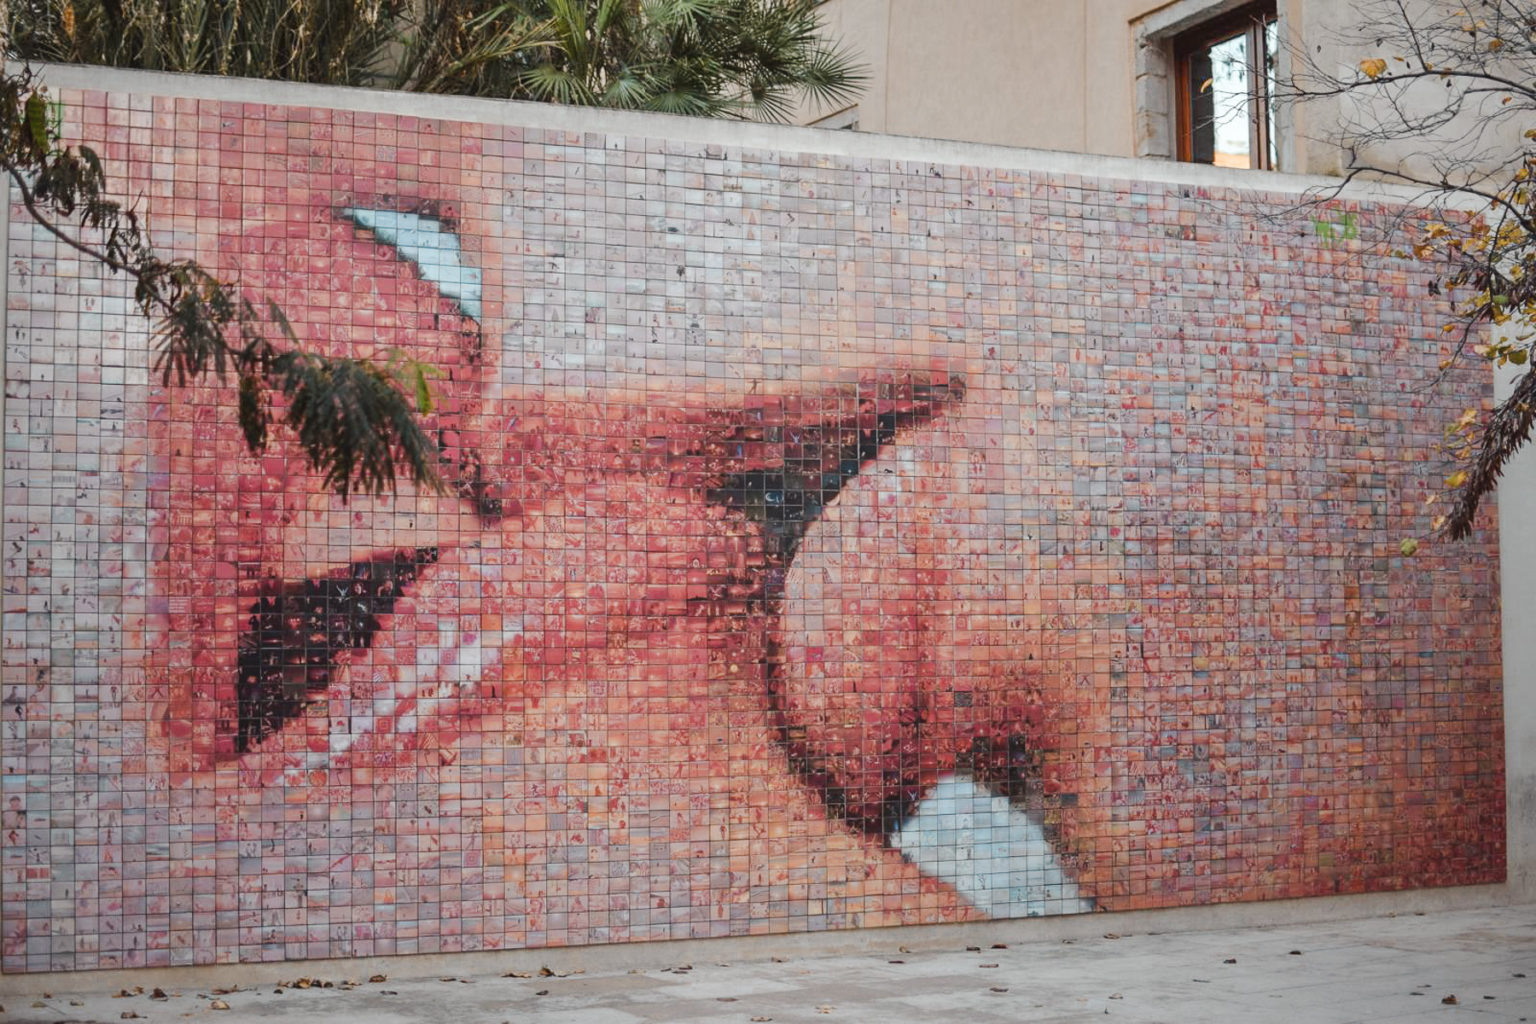 Kiss Mural In Barcelona - Barcelona Instagrammable Spots